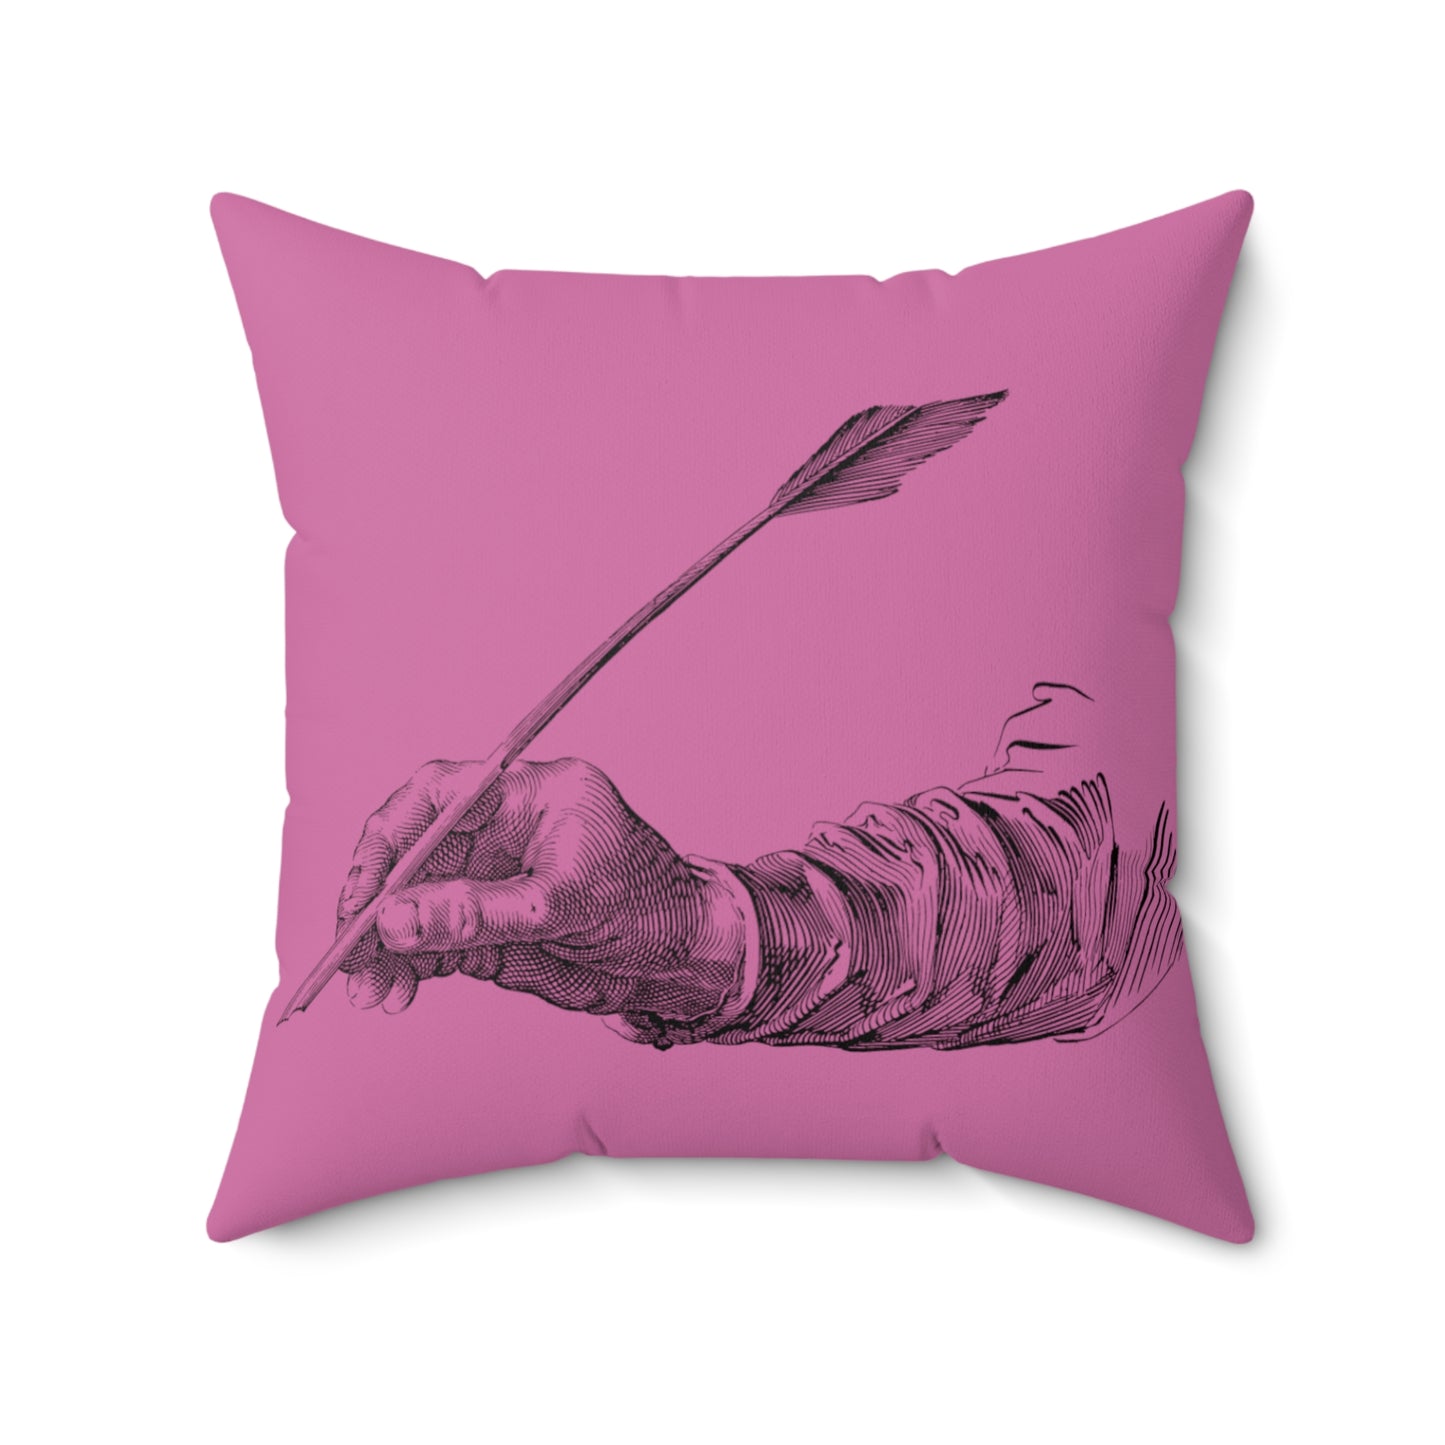 Spun Polyester Square Pillow: Writing Lite Pink